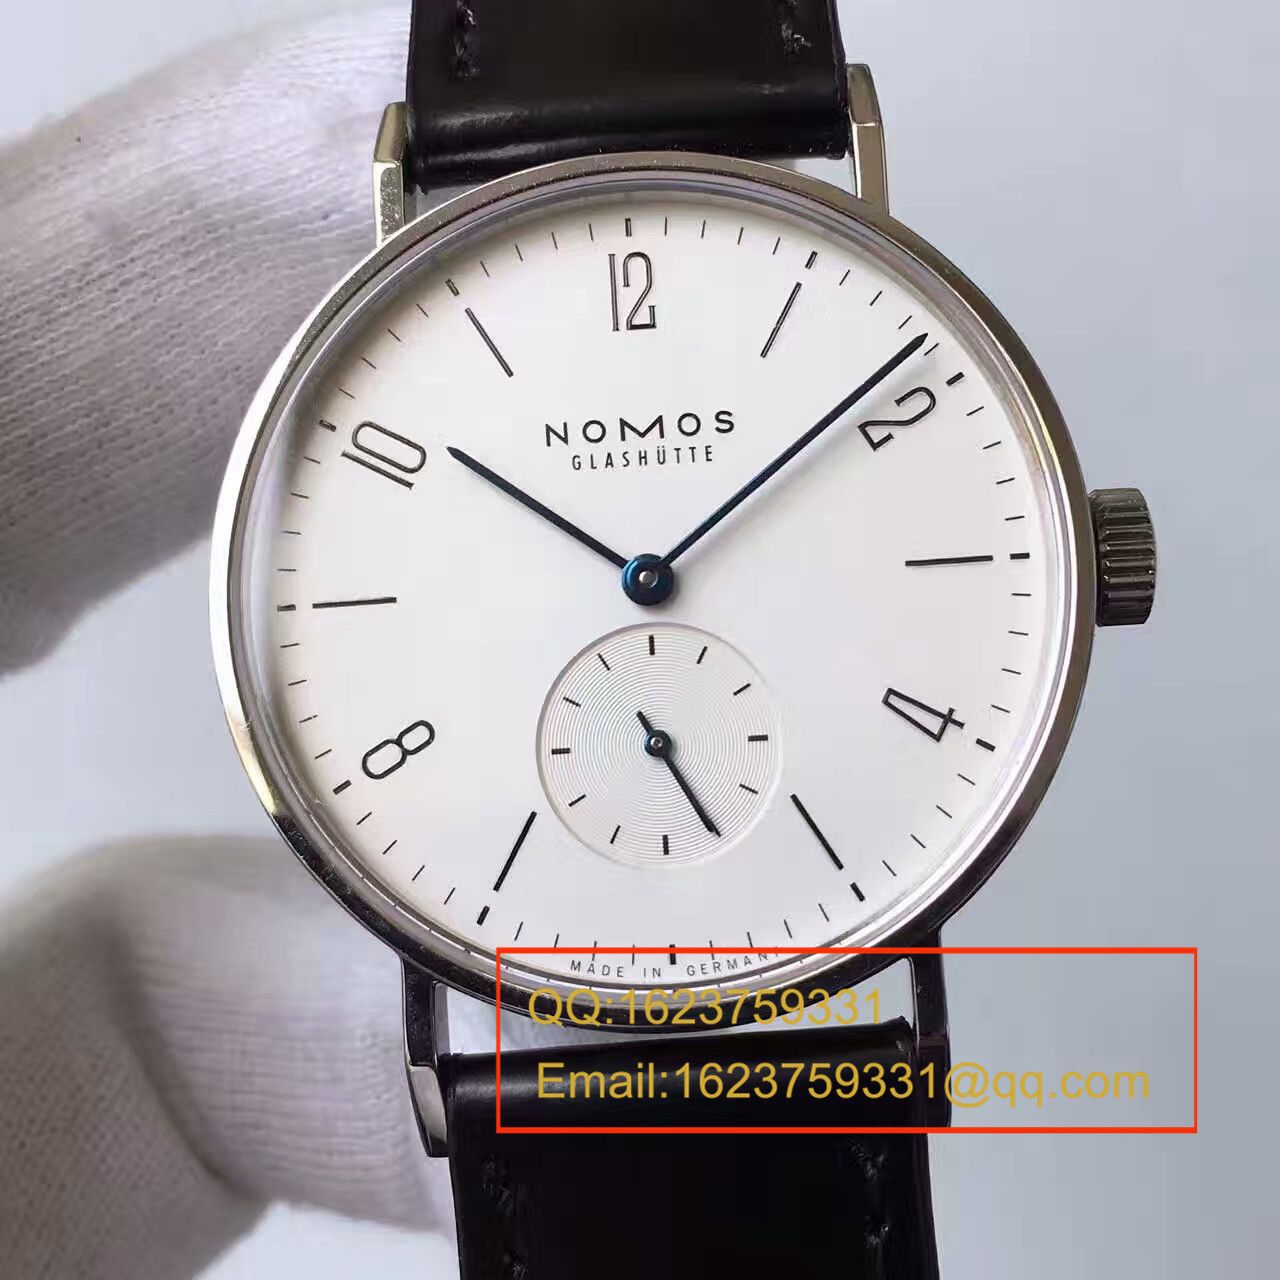 4、你知道nomos的手表吗？怎么值得买？先说优缺点，价格可以入手。